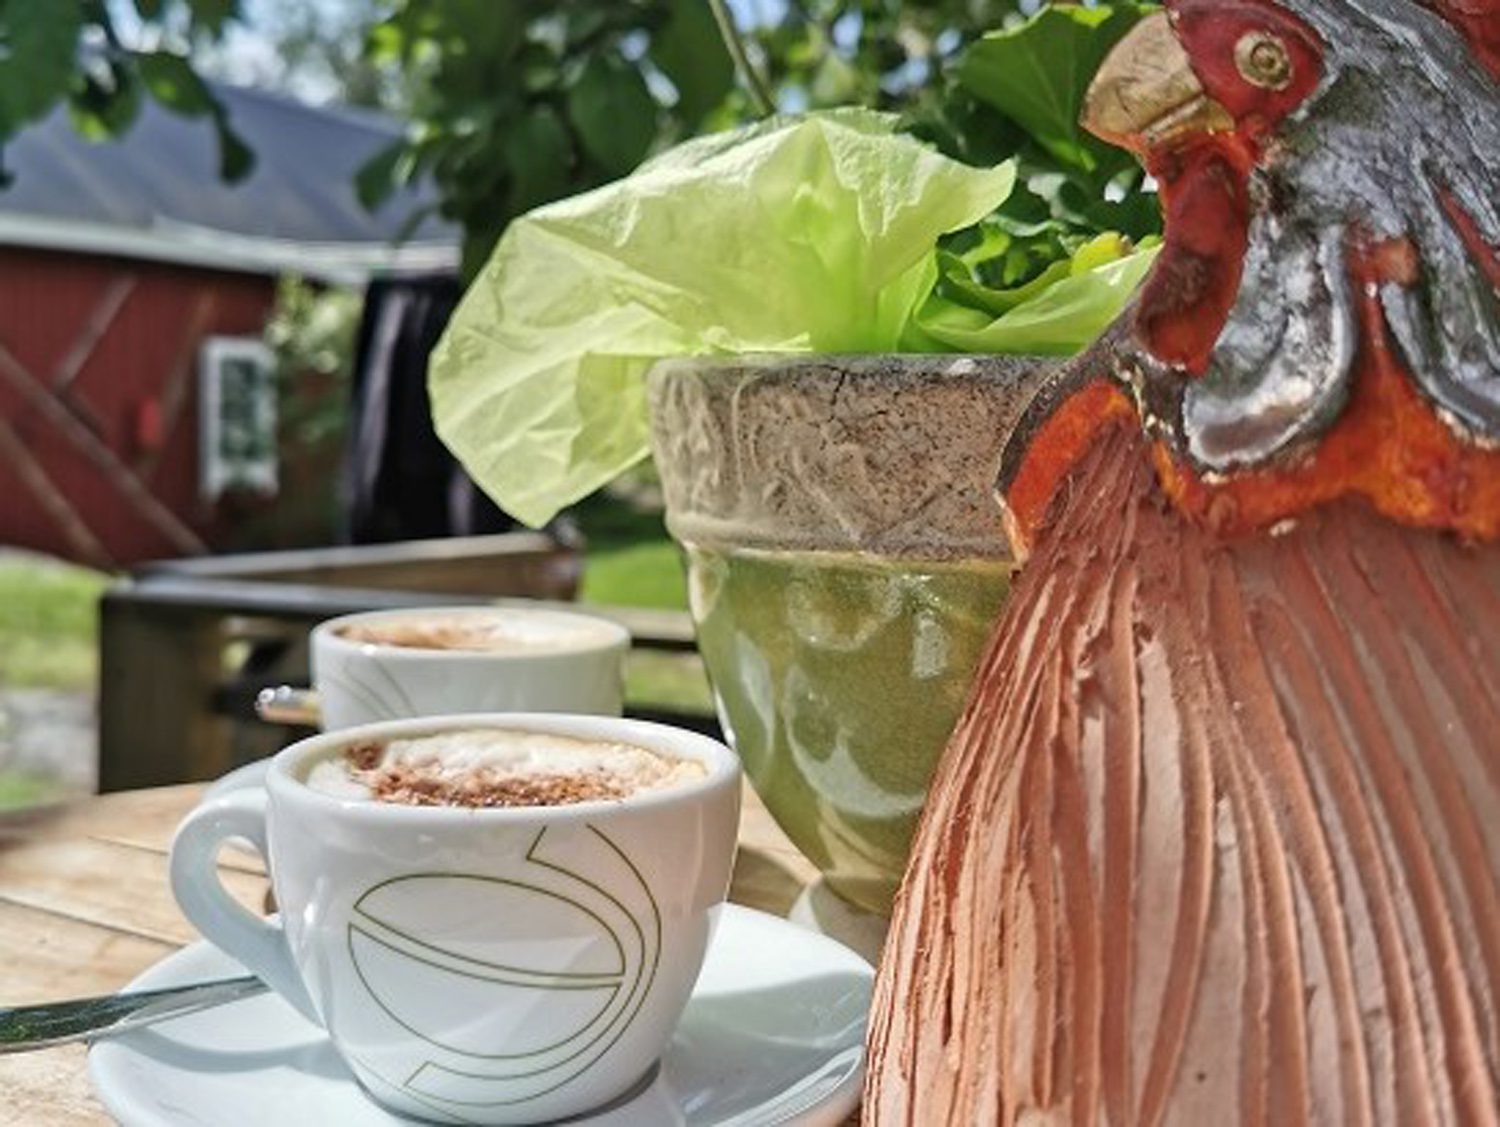 En bild på ett bord på nära håll, på bordet finns två små tallrikar med koppar på och vid sidan om en höna gjord av porslin.